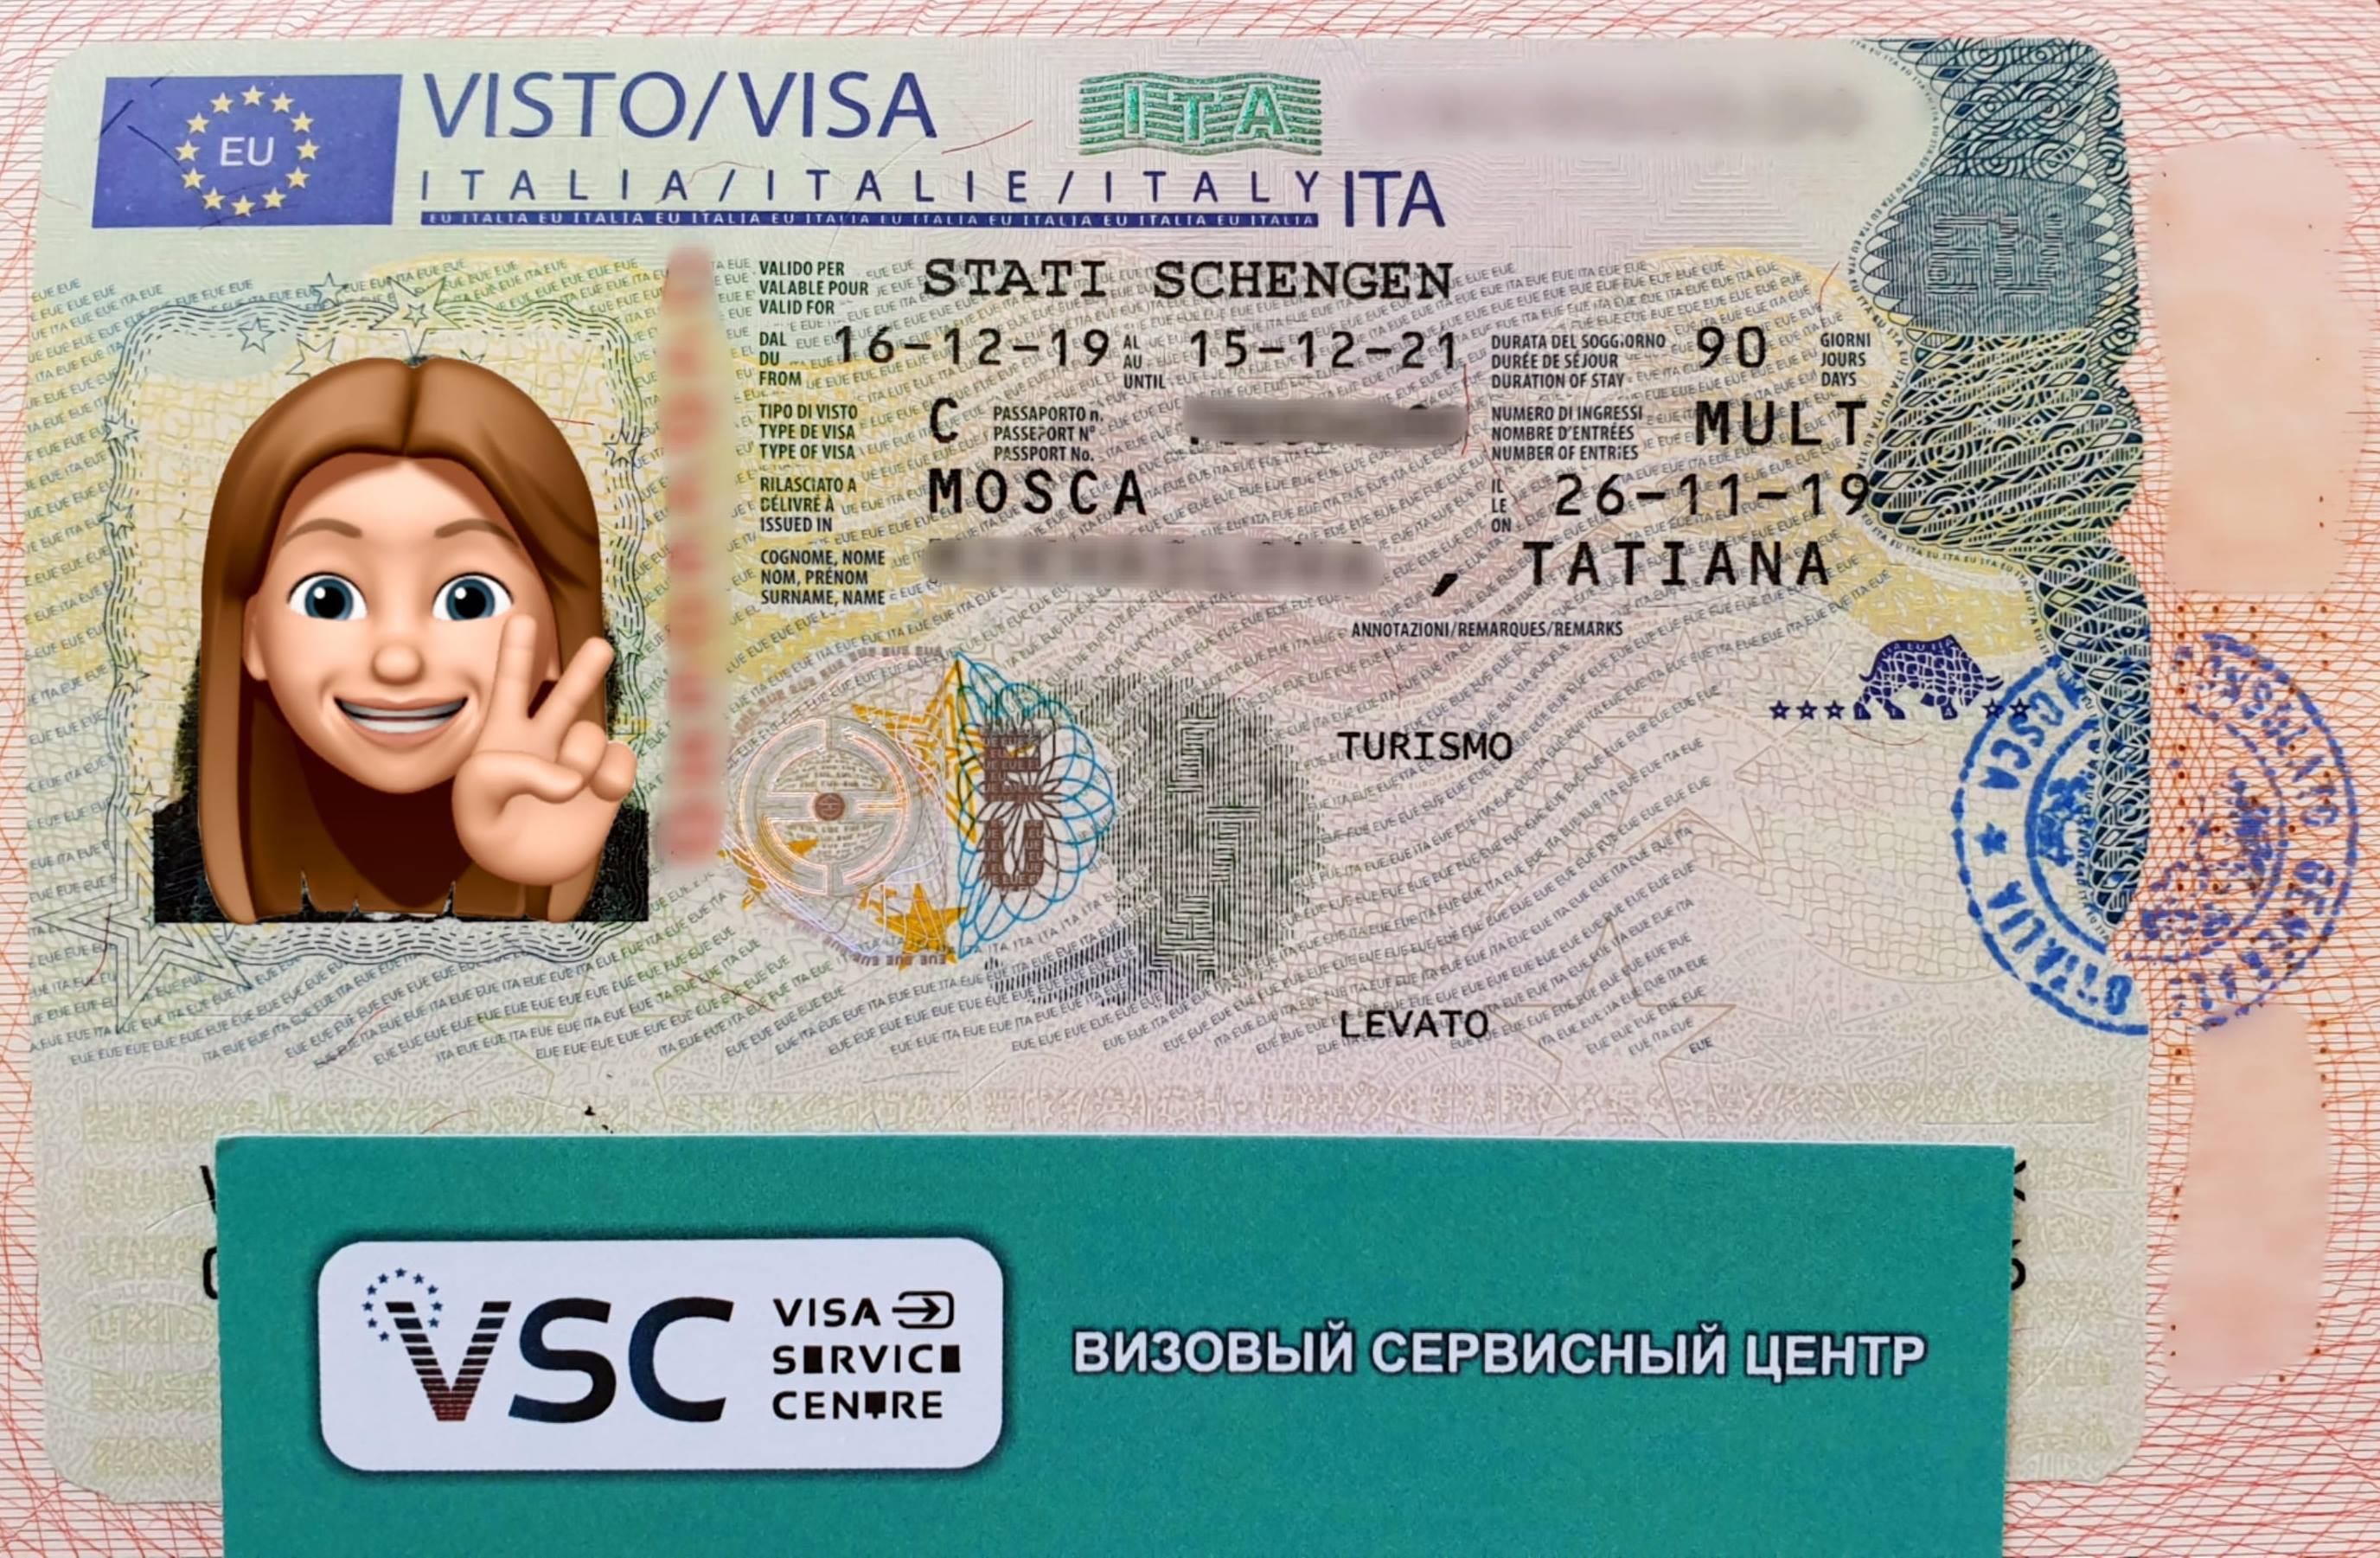 Правила использования шенгенской визы  |  grand voyage
правила использования шенгенской визы